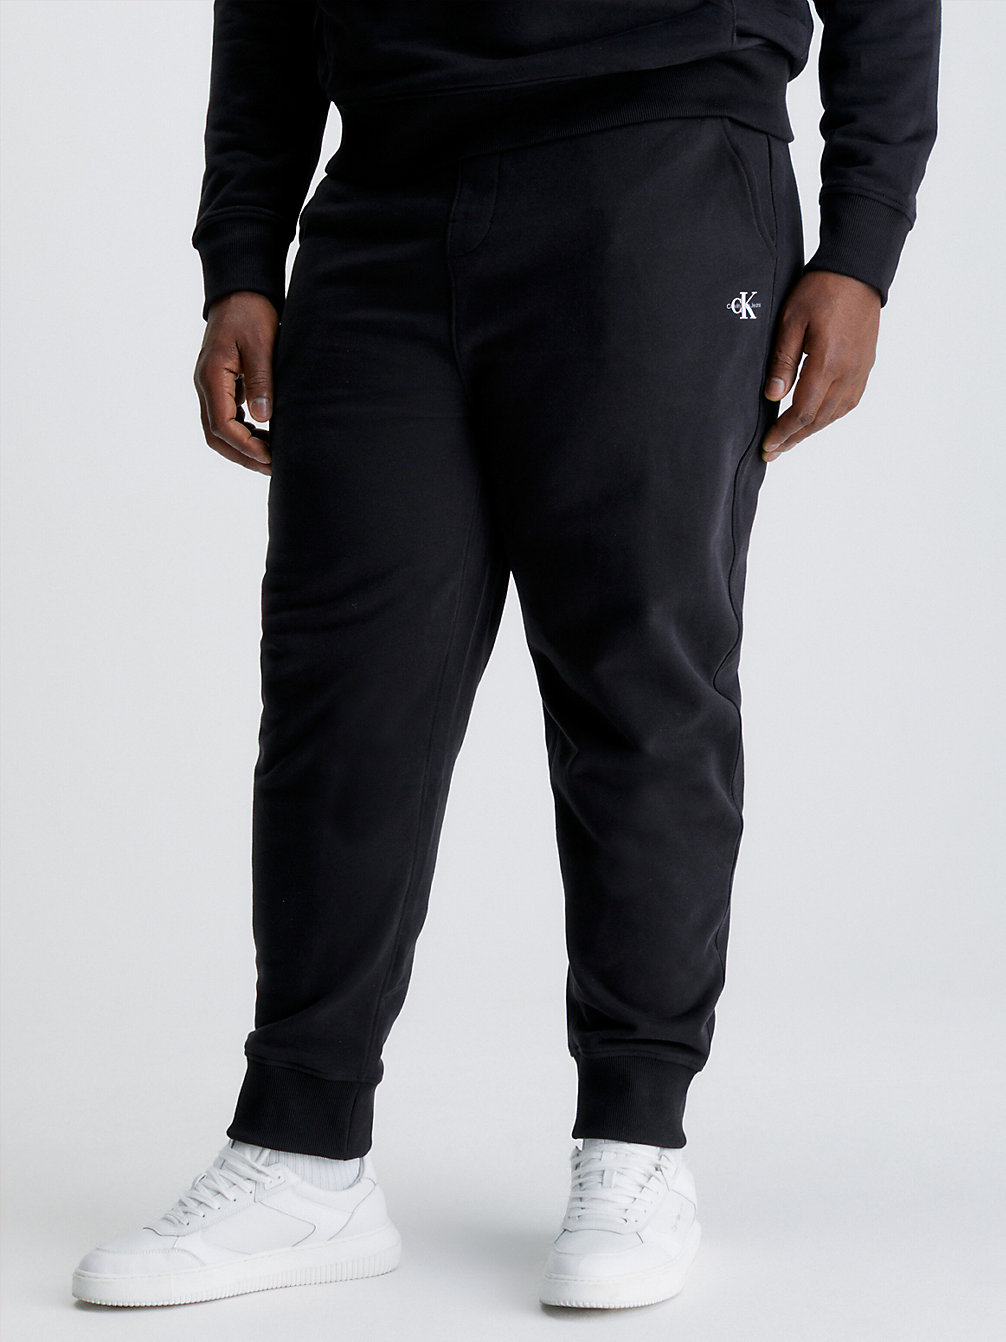 Pantalon De Jogging Grande Taille Avec Monogramme > CK BLACK > undefined hommes > Calvin Klein